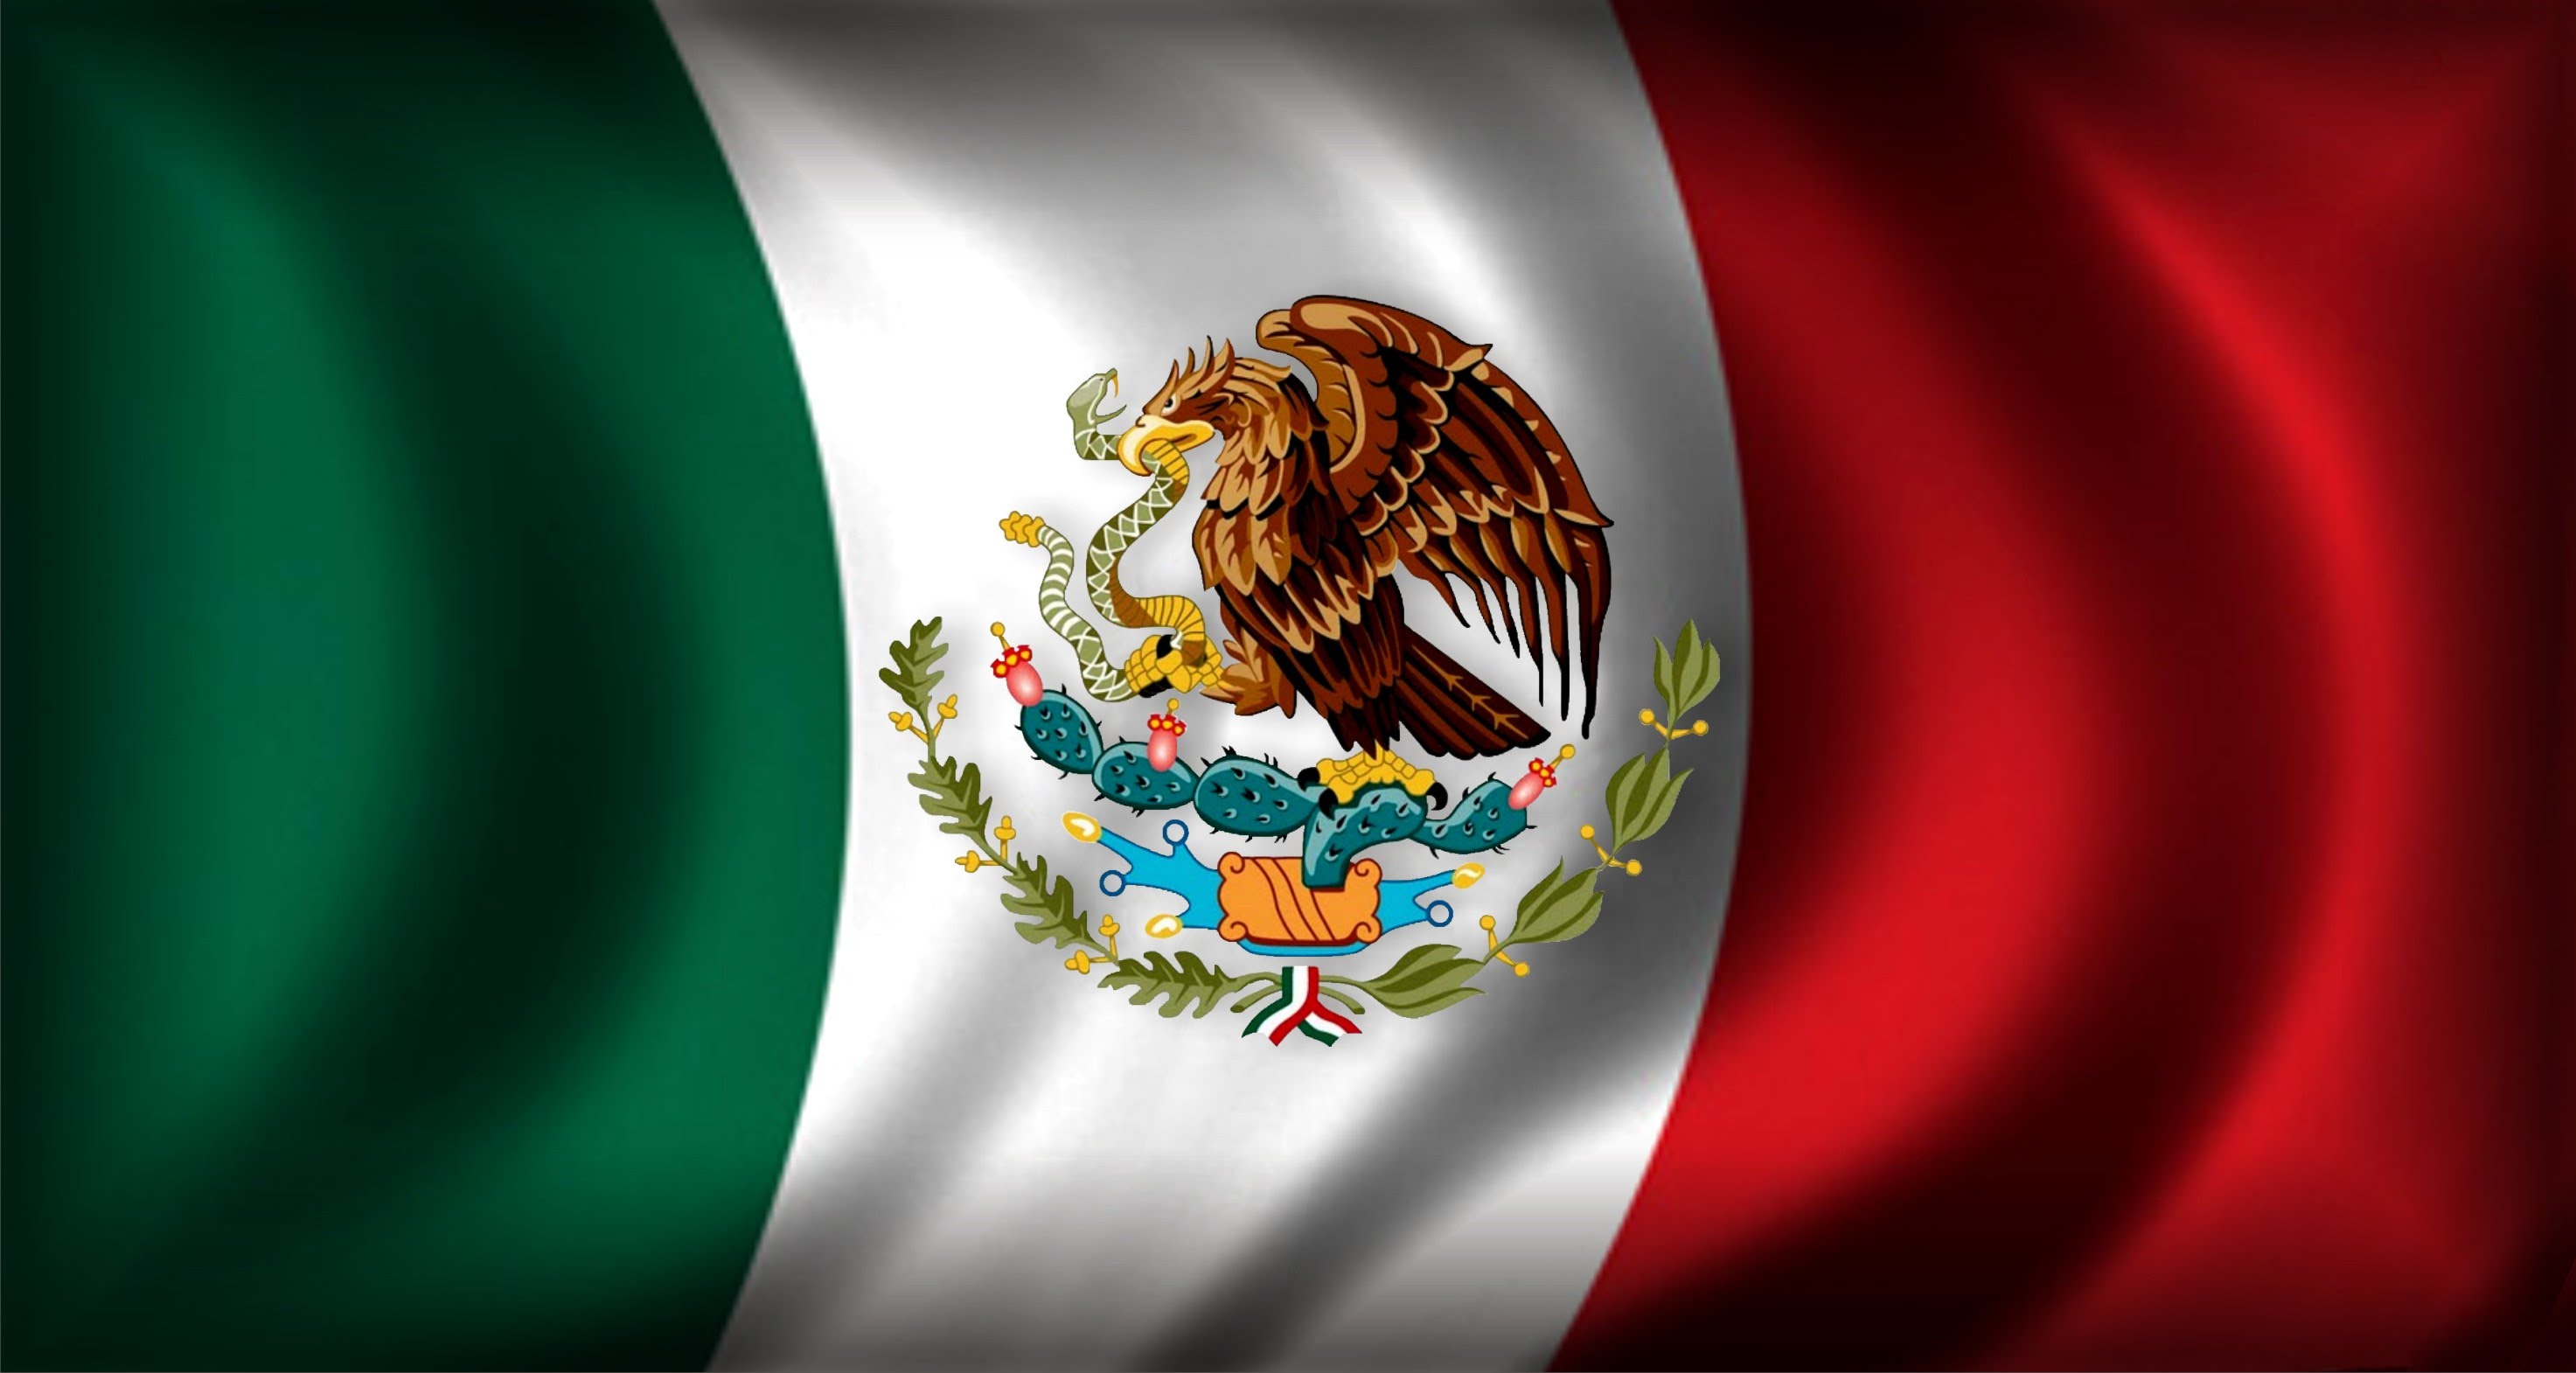 Bandiera del Messico